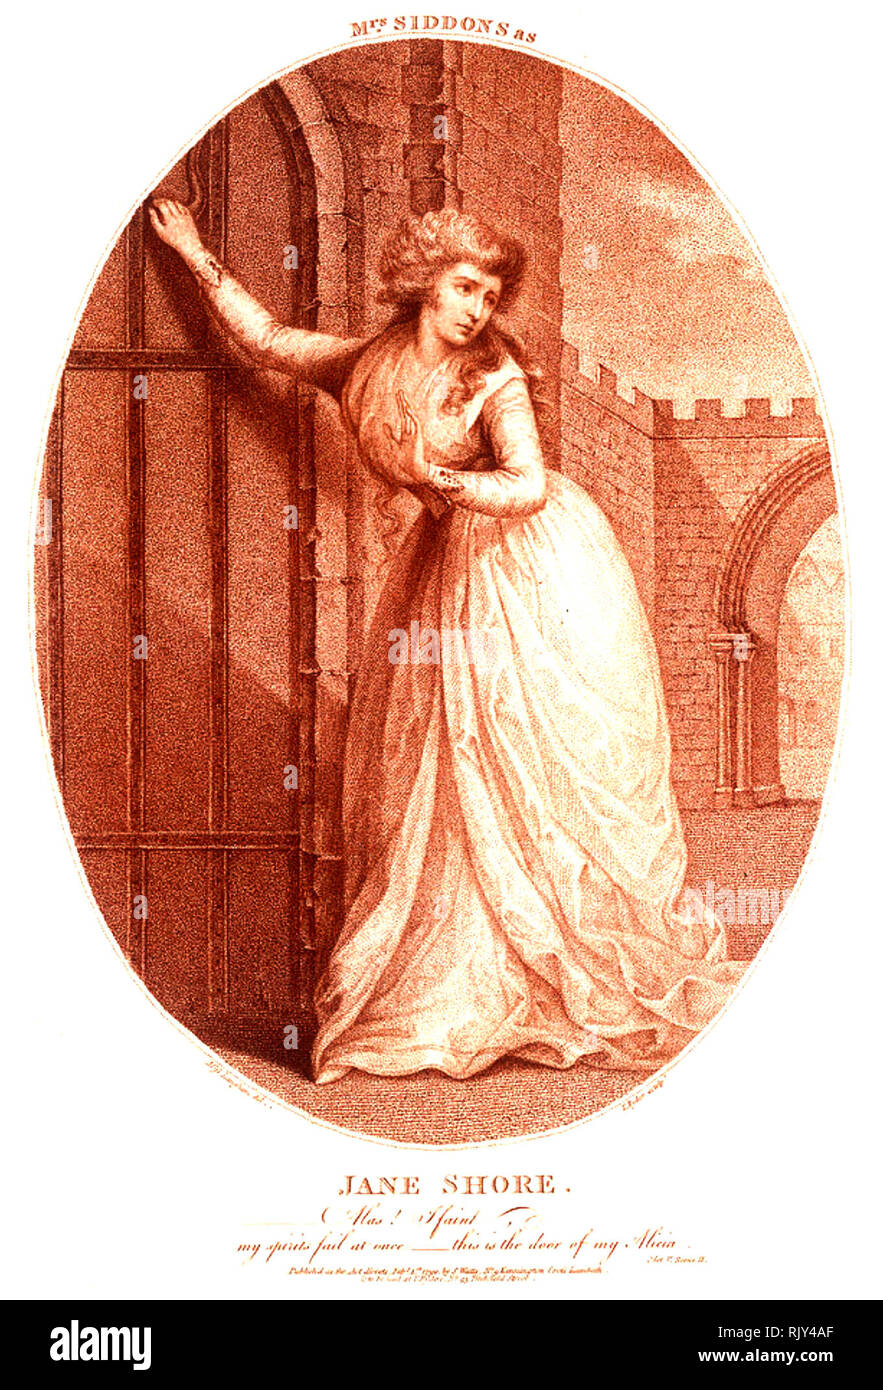 SARAH SIDDONS (1755-1831) Actrice tragique gallois en 1714 dans le rôle titre de "La tragédie de Jane Shore' par Nicholas Rowe Banque D'Images